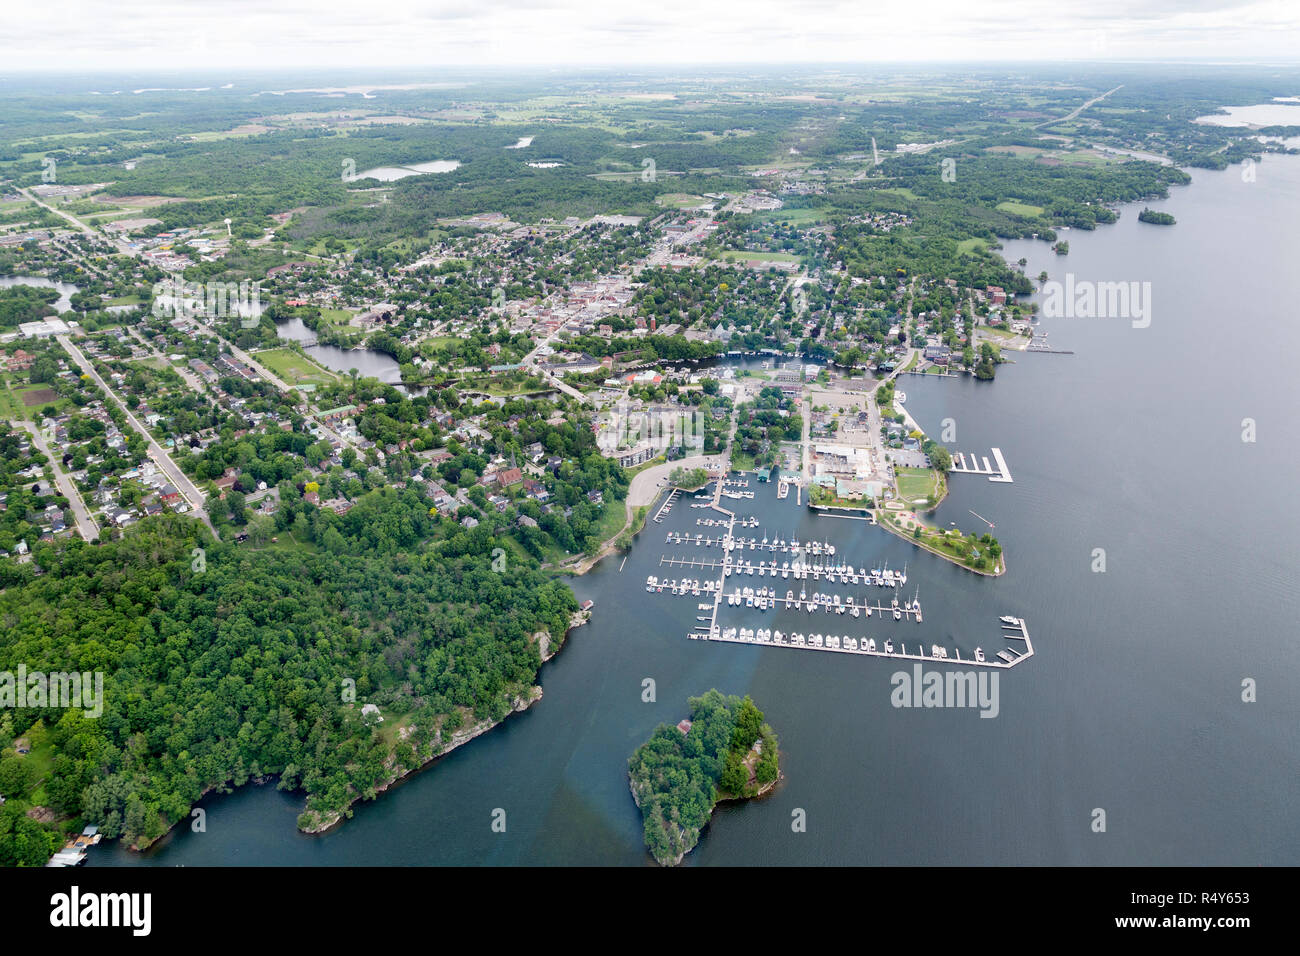 Vue aérienne de Gananoque, en Ontario, Canada. La ville est considérée comme une passerelle vers la région des Mille-Îles, à la frontière des États-Unis et du Canada. Banque D'Images